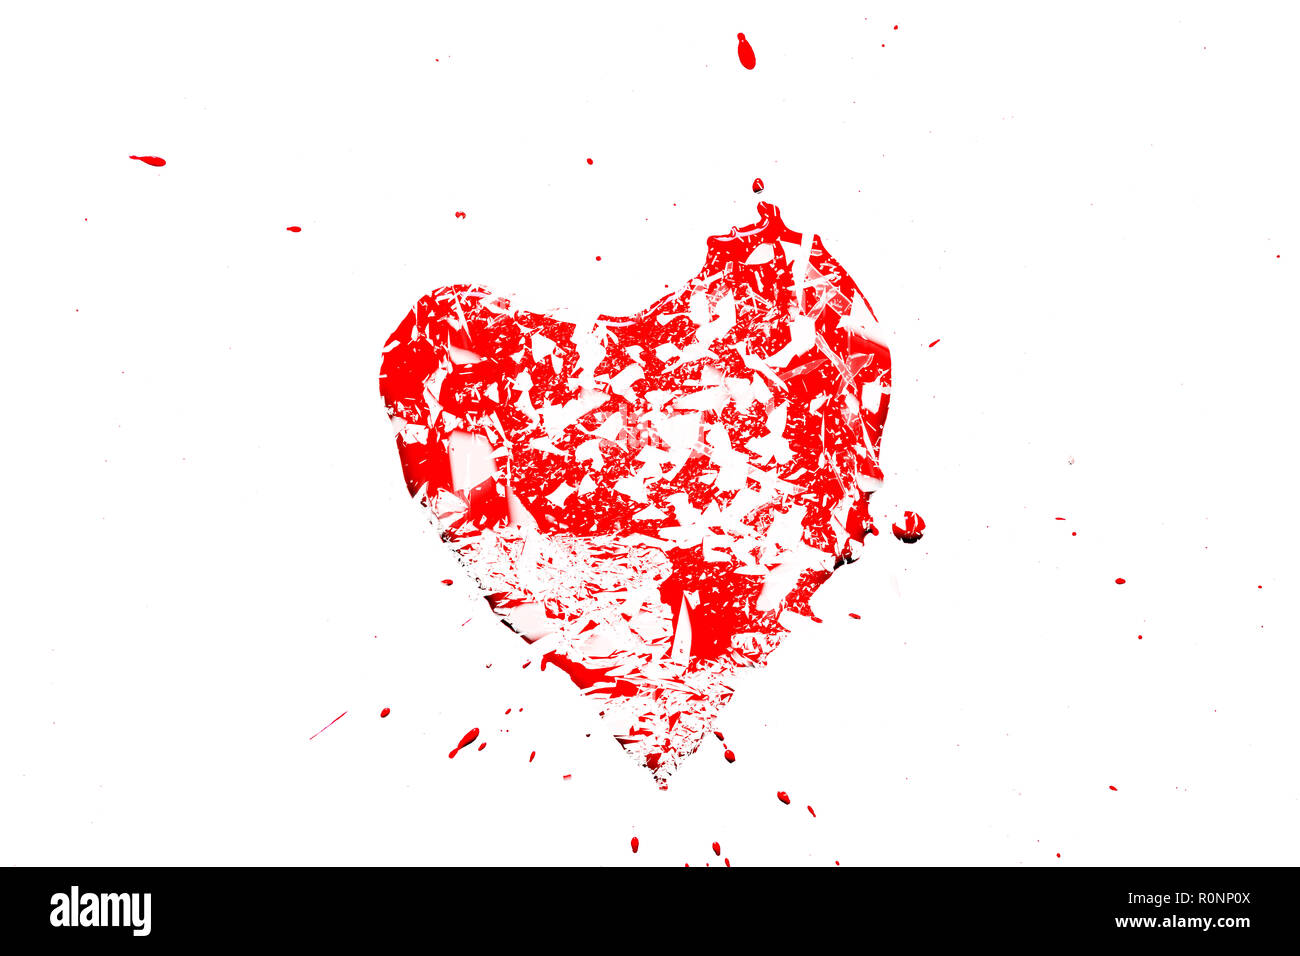 Fotografia creativa di una rossa del cuore umano simbolo, suddivisi in piccoli pezzi di vetro isolato su uno sfondo bianco. Allegoria dell'amore infelice è rotto un hea Foto Stock